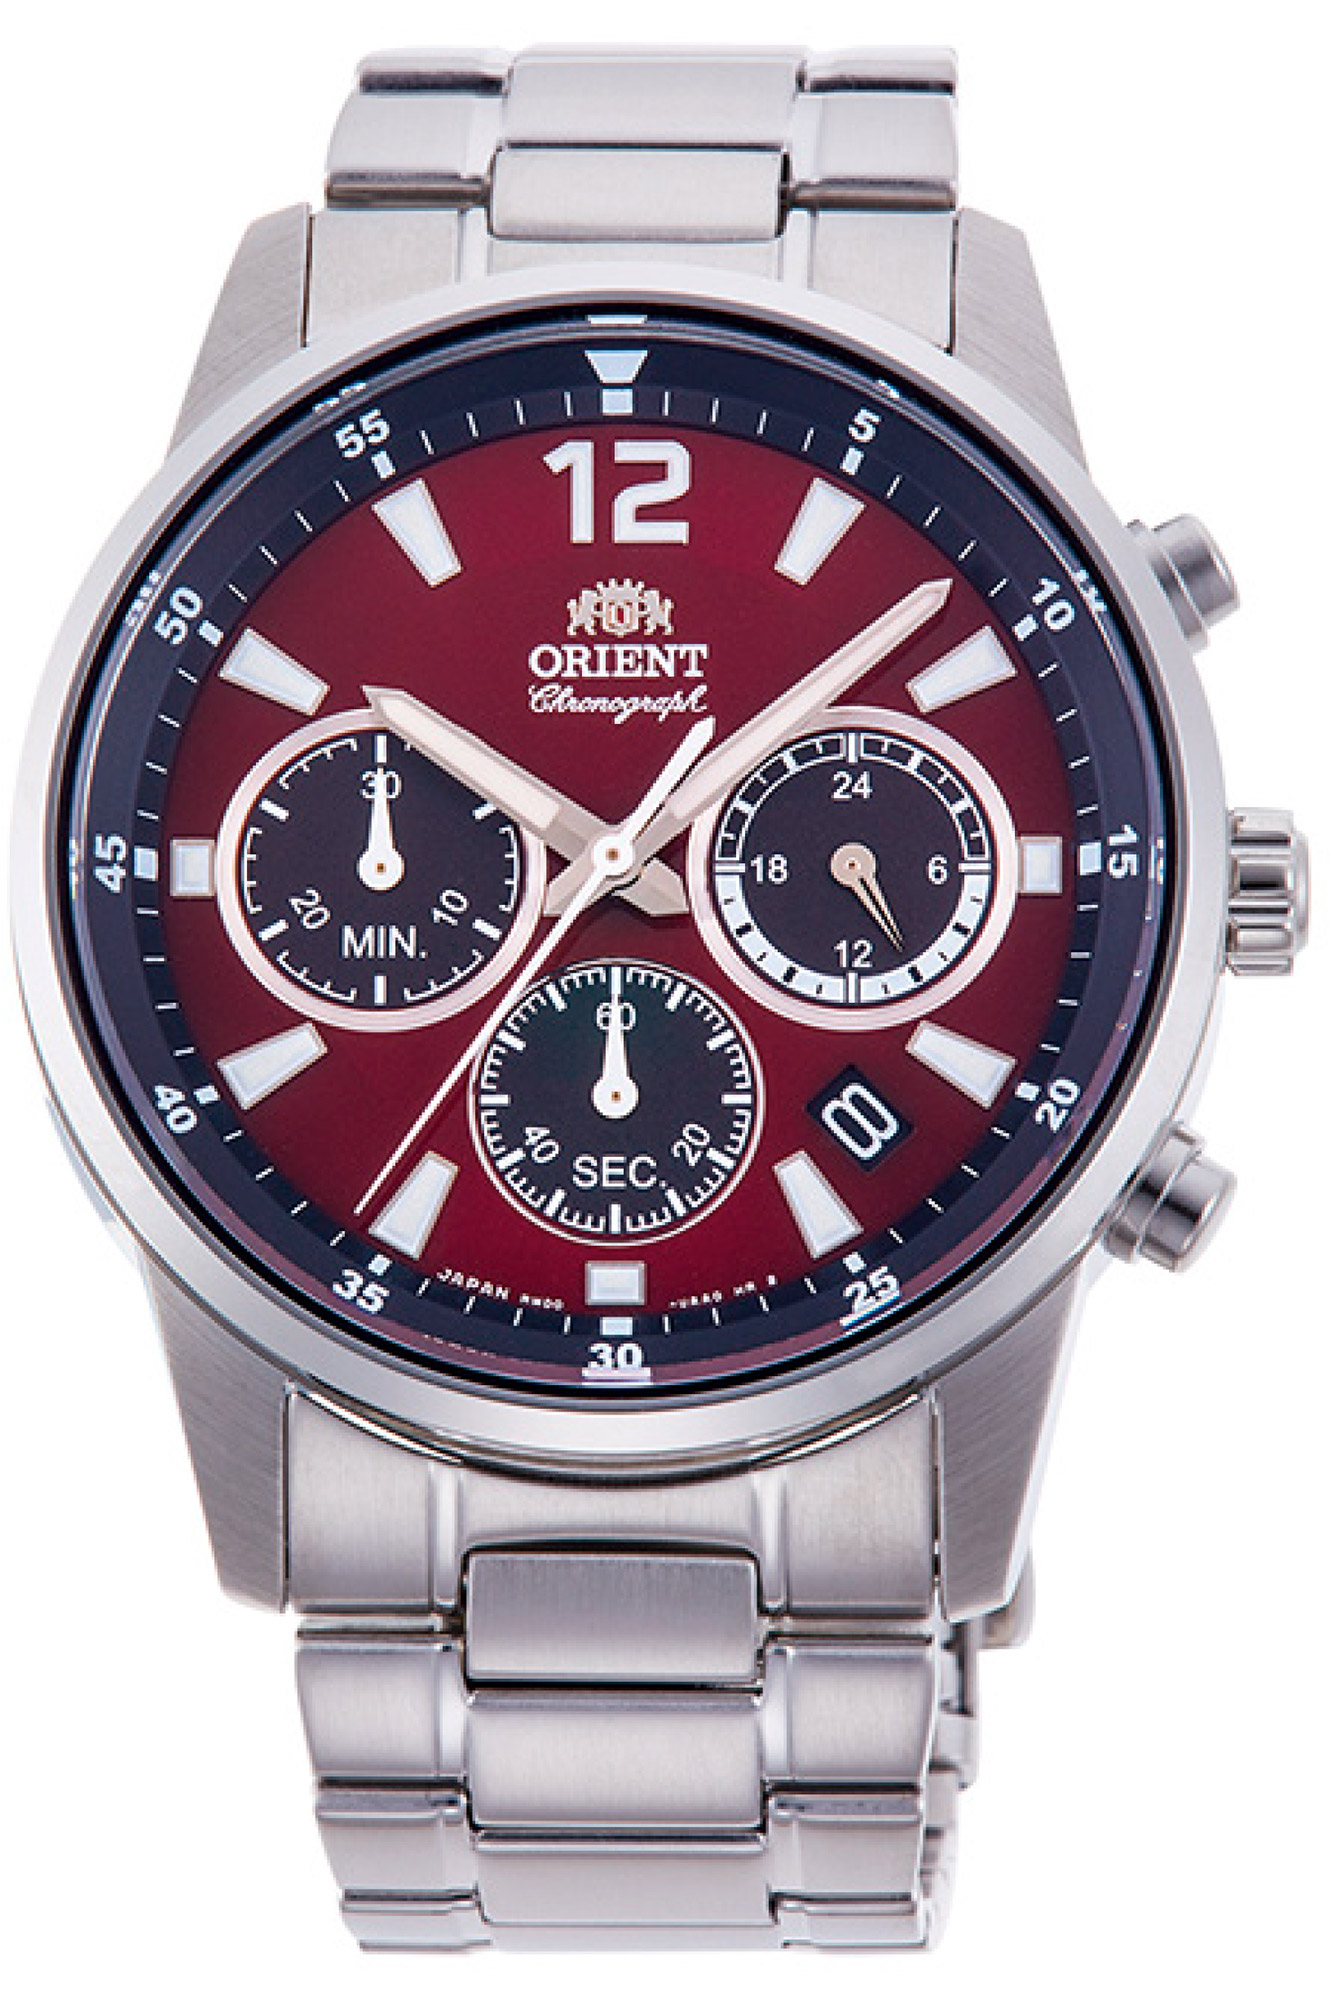 Купить часы ориент механику. Наручные часы Orient kv0001b1. Часы Orient ra-kv0001b10b. Orient Chronograph ra-kv0001b10b. Orient ra-kv0004r10b.